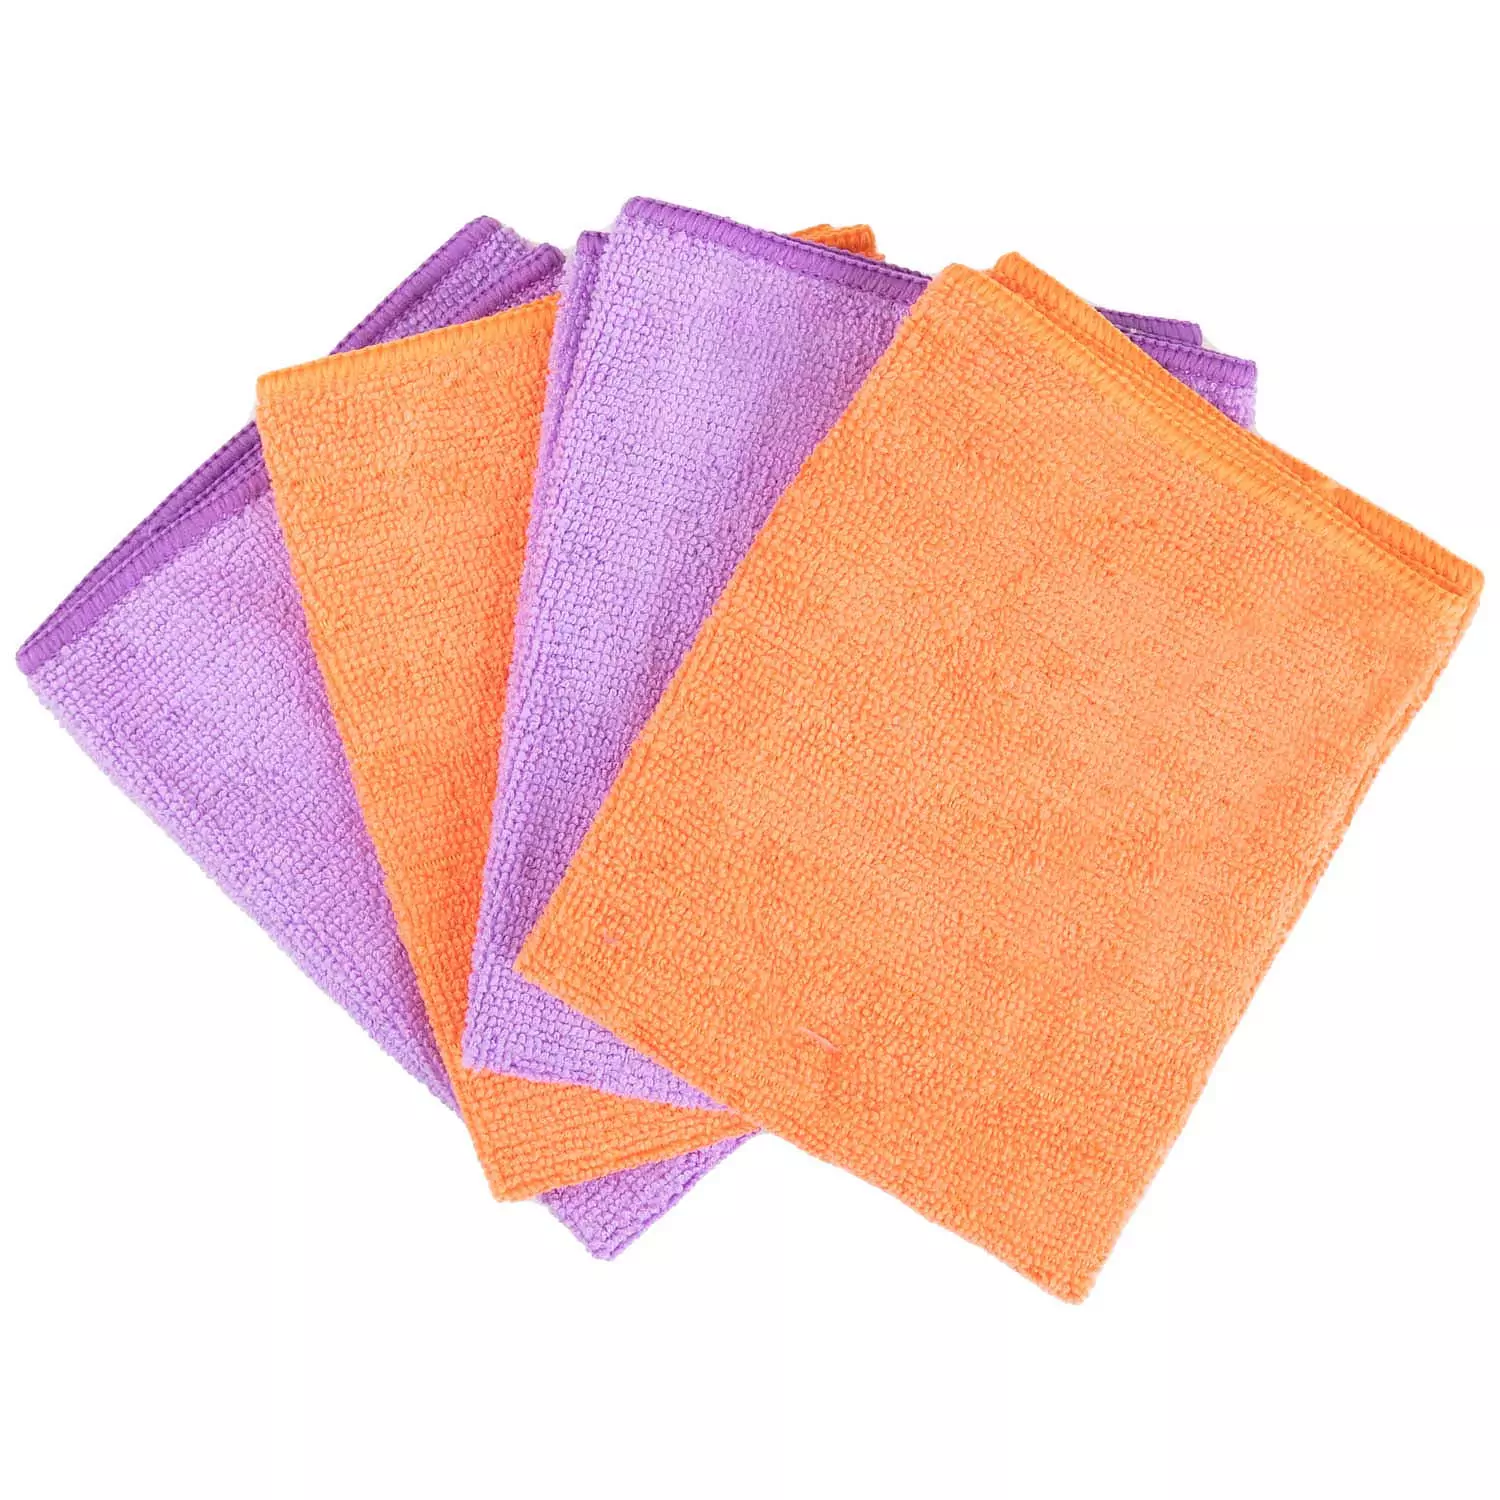 Wizard - Chiffons de cuisine en microfibre, paq. de 4, orange et mauve.  Colour: orange, Fr